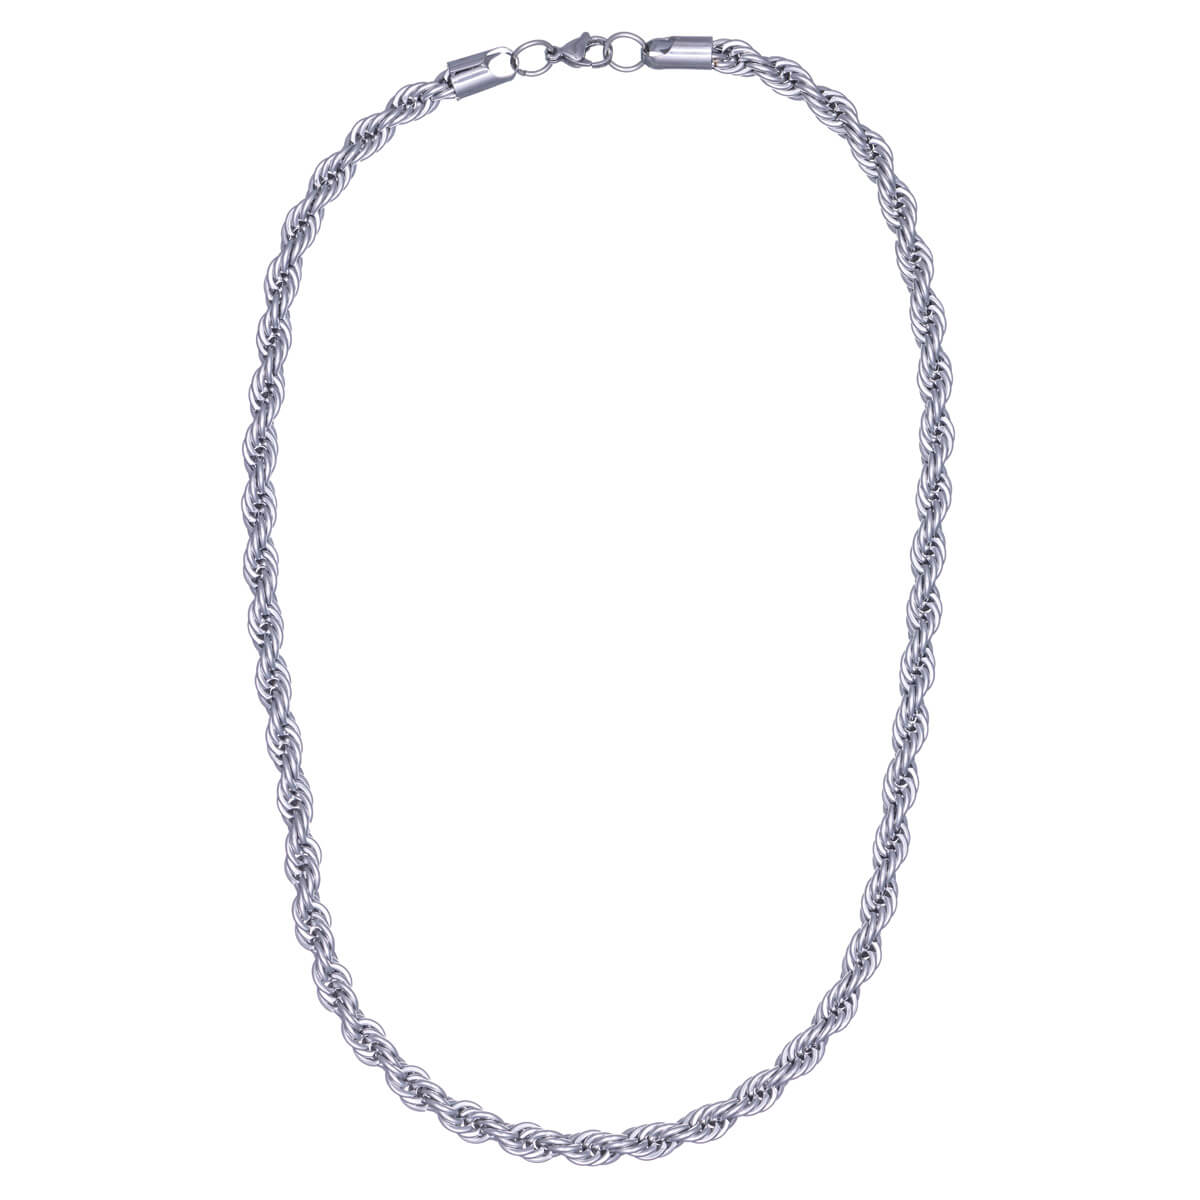 Rope chain steel cordeliaketju necklace 7mm 55cm